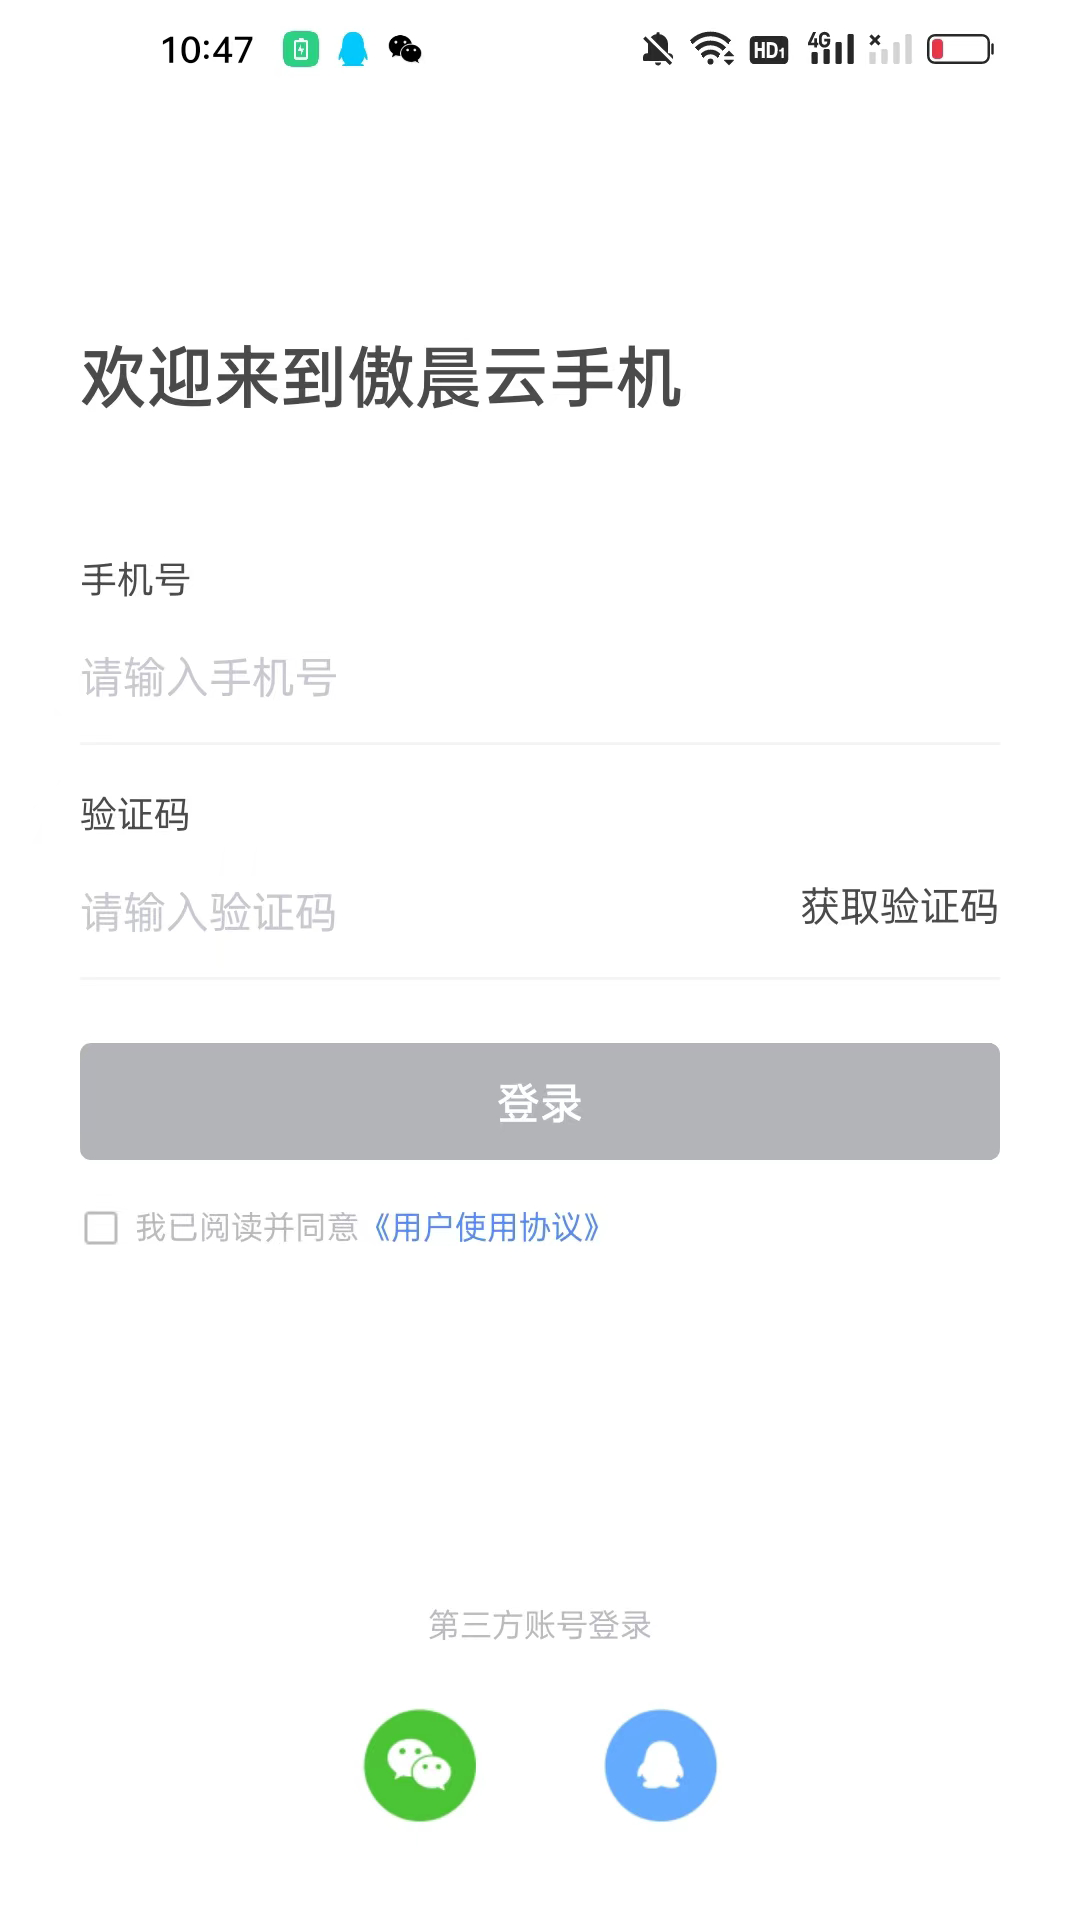 傲晨云手机app下载官方版-傲晨云手机v1.1.4 安卓版